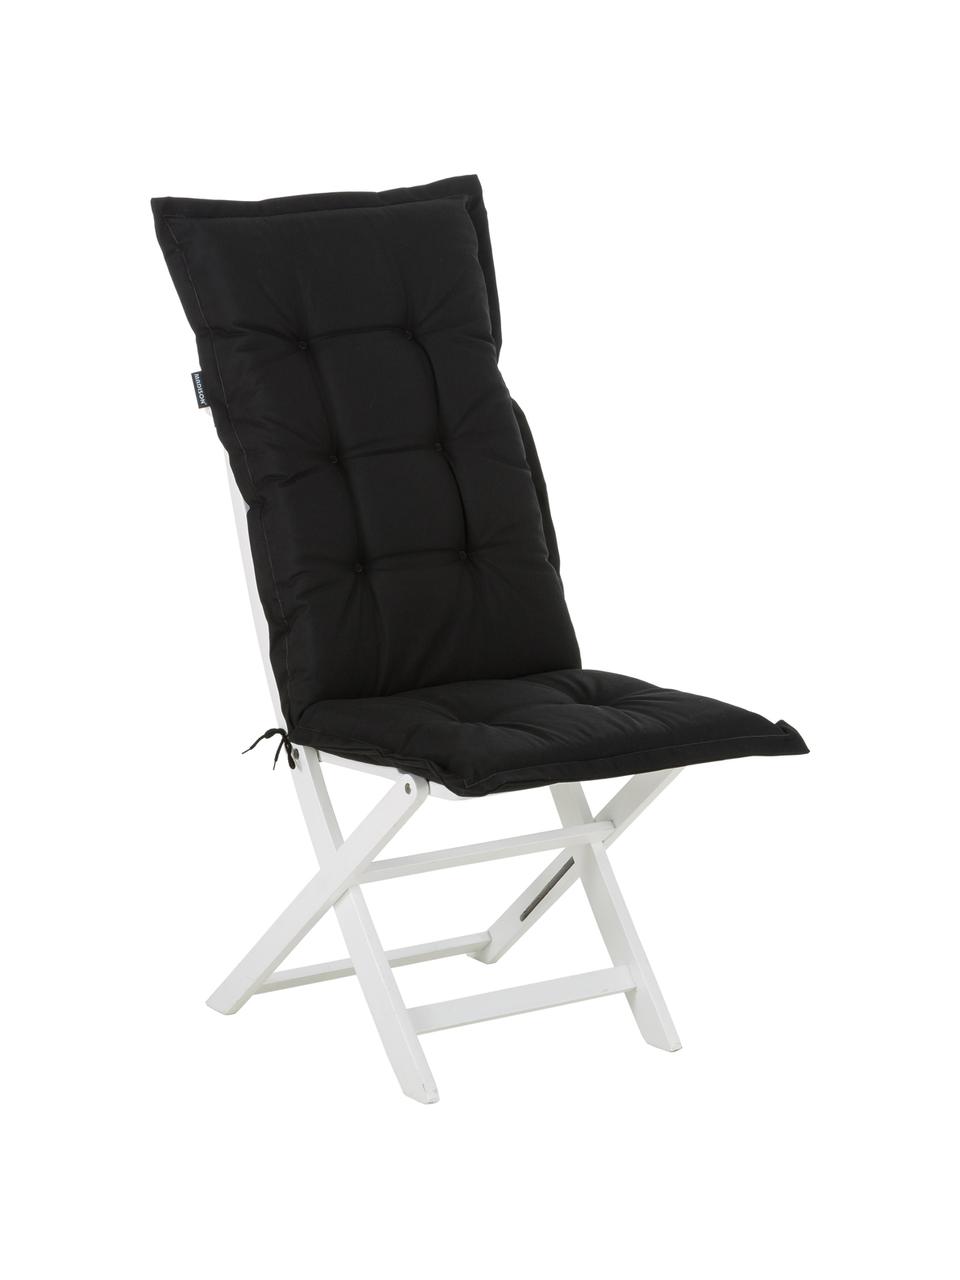 Einfarbige Hochlehner-Stuhlauflage Panama in Schwarz, Bezug: 50% Baumwolle, 50% Polyes, Schwarz, 50 x 123 cm